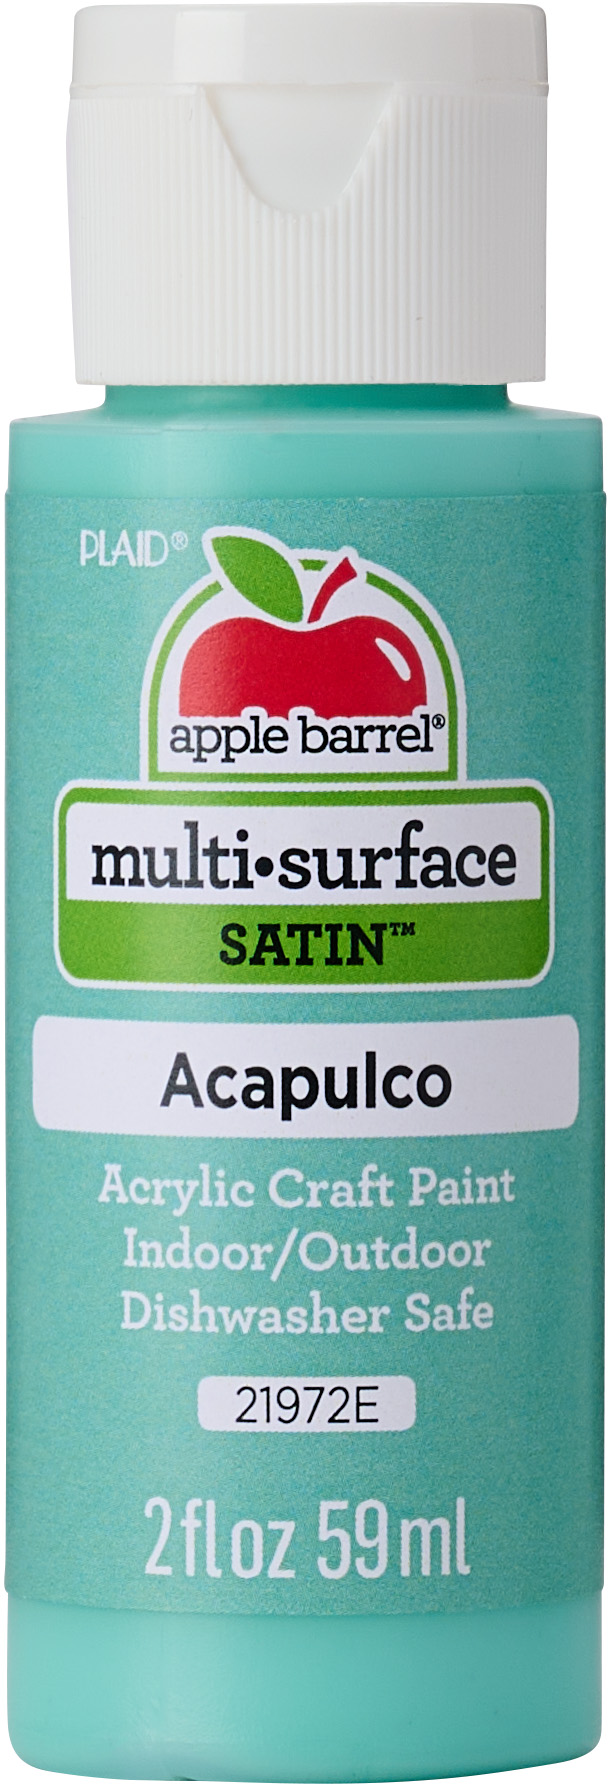 Apple Barrel Multi-Surface Acrylic Craft Paint, Satin Finish, Acapulco, 2 fl oz - image 1 of 12